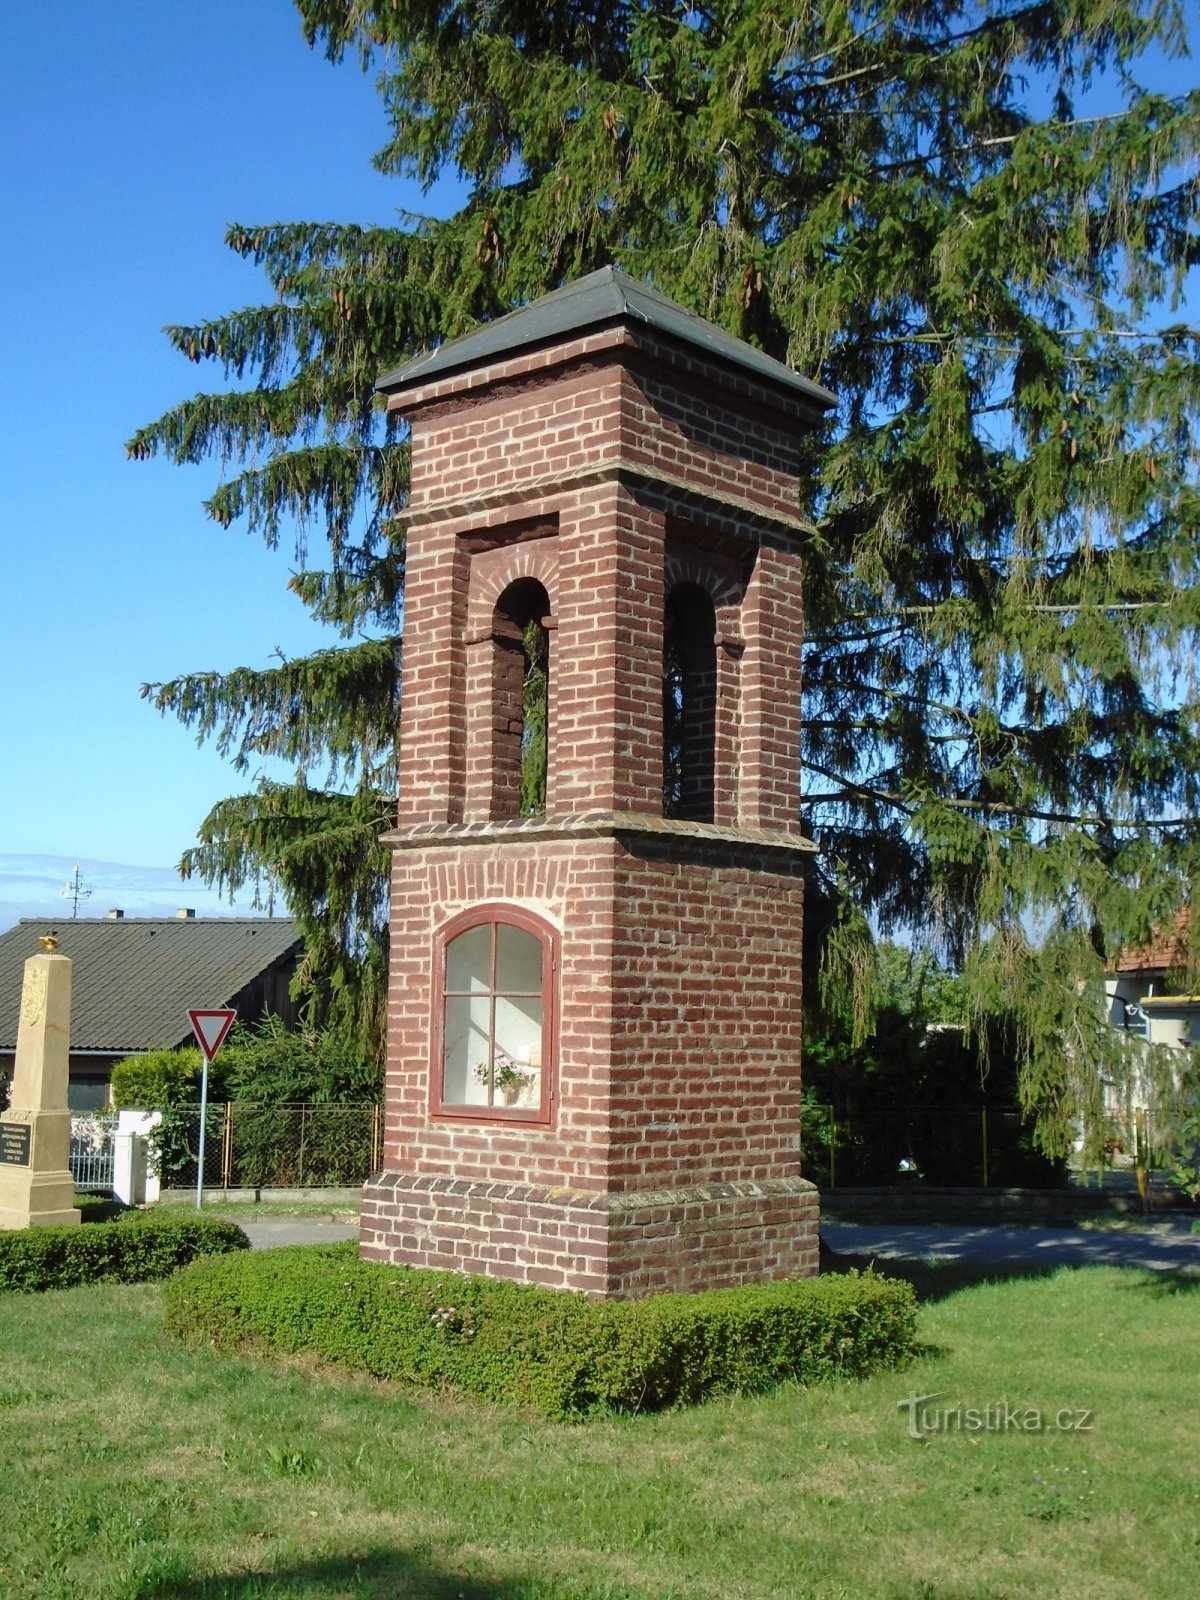 Chapel with a belfry (Osičky)